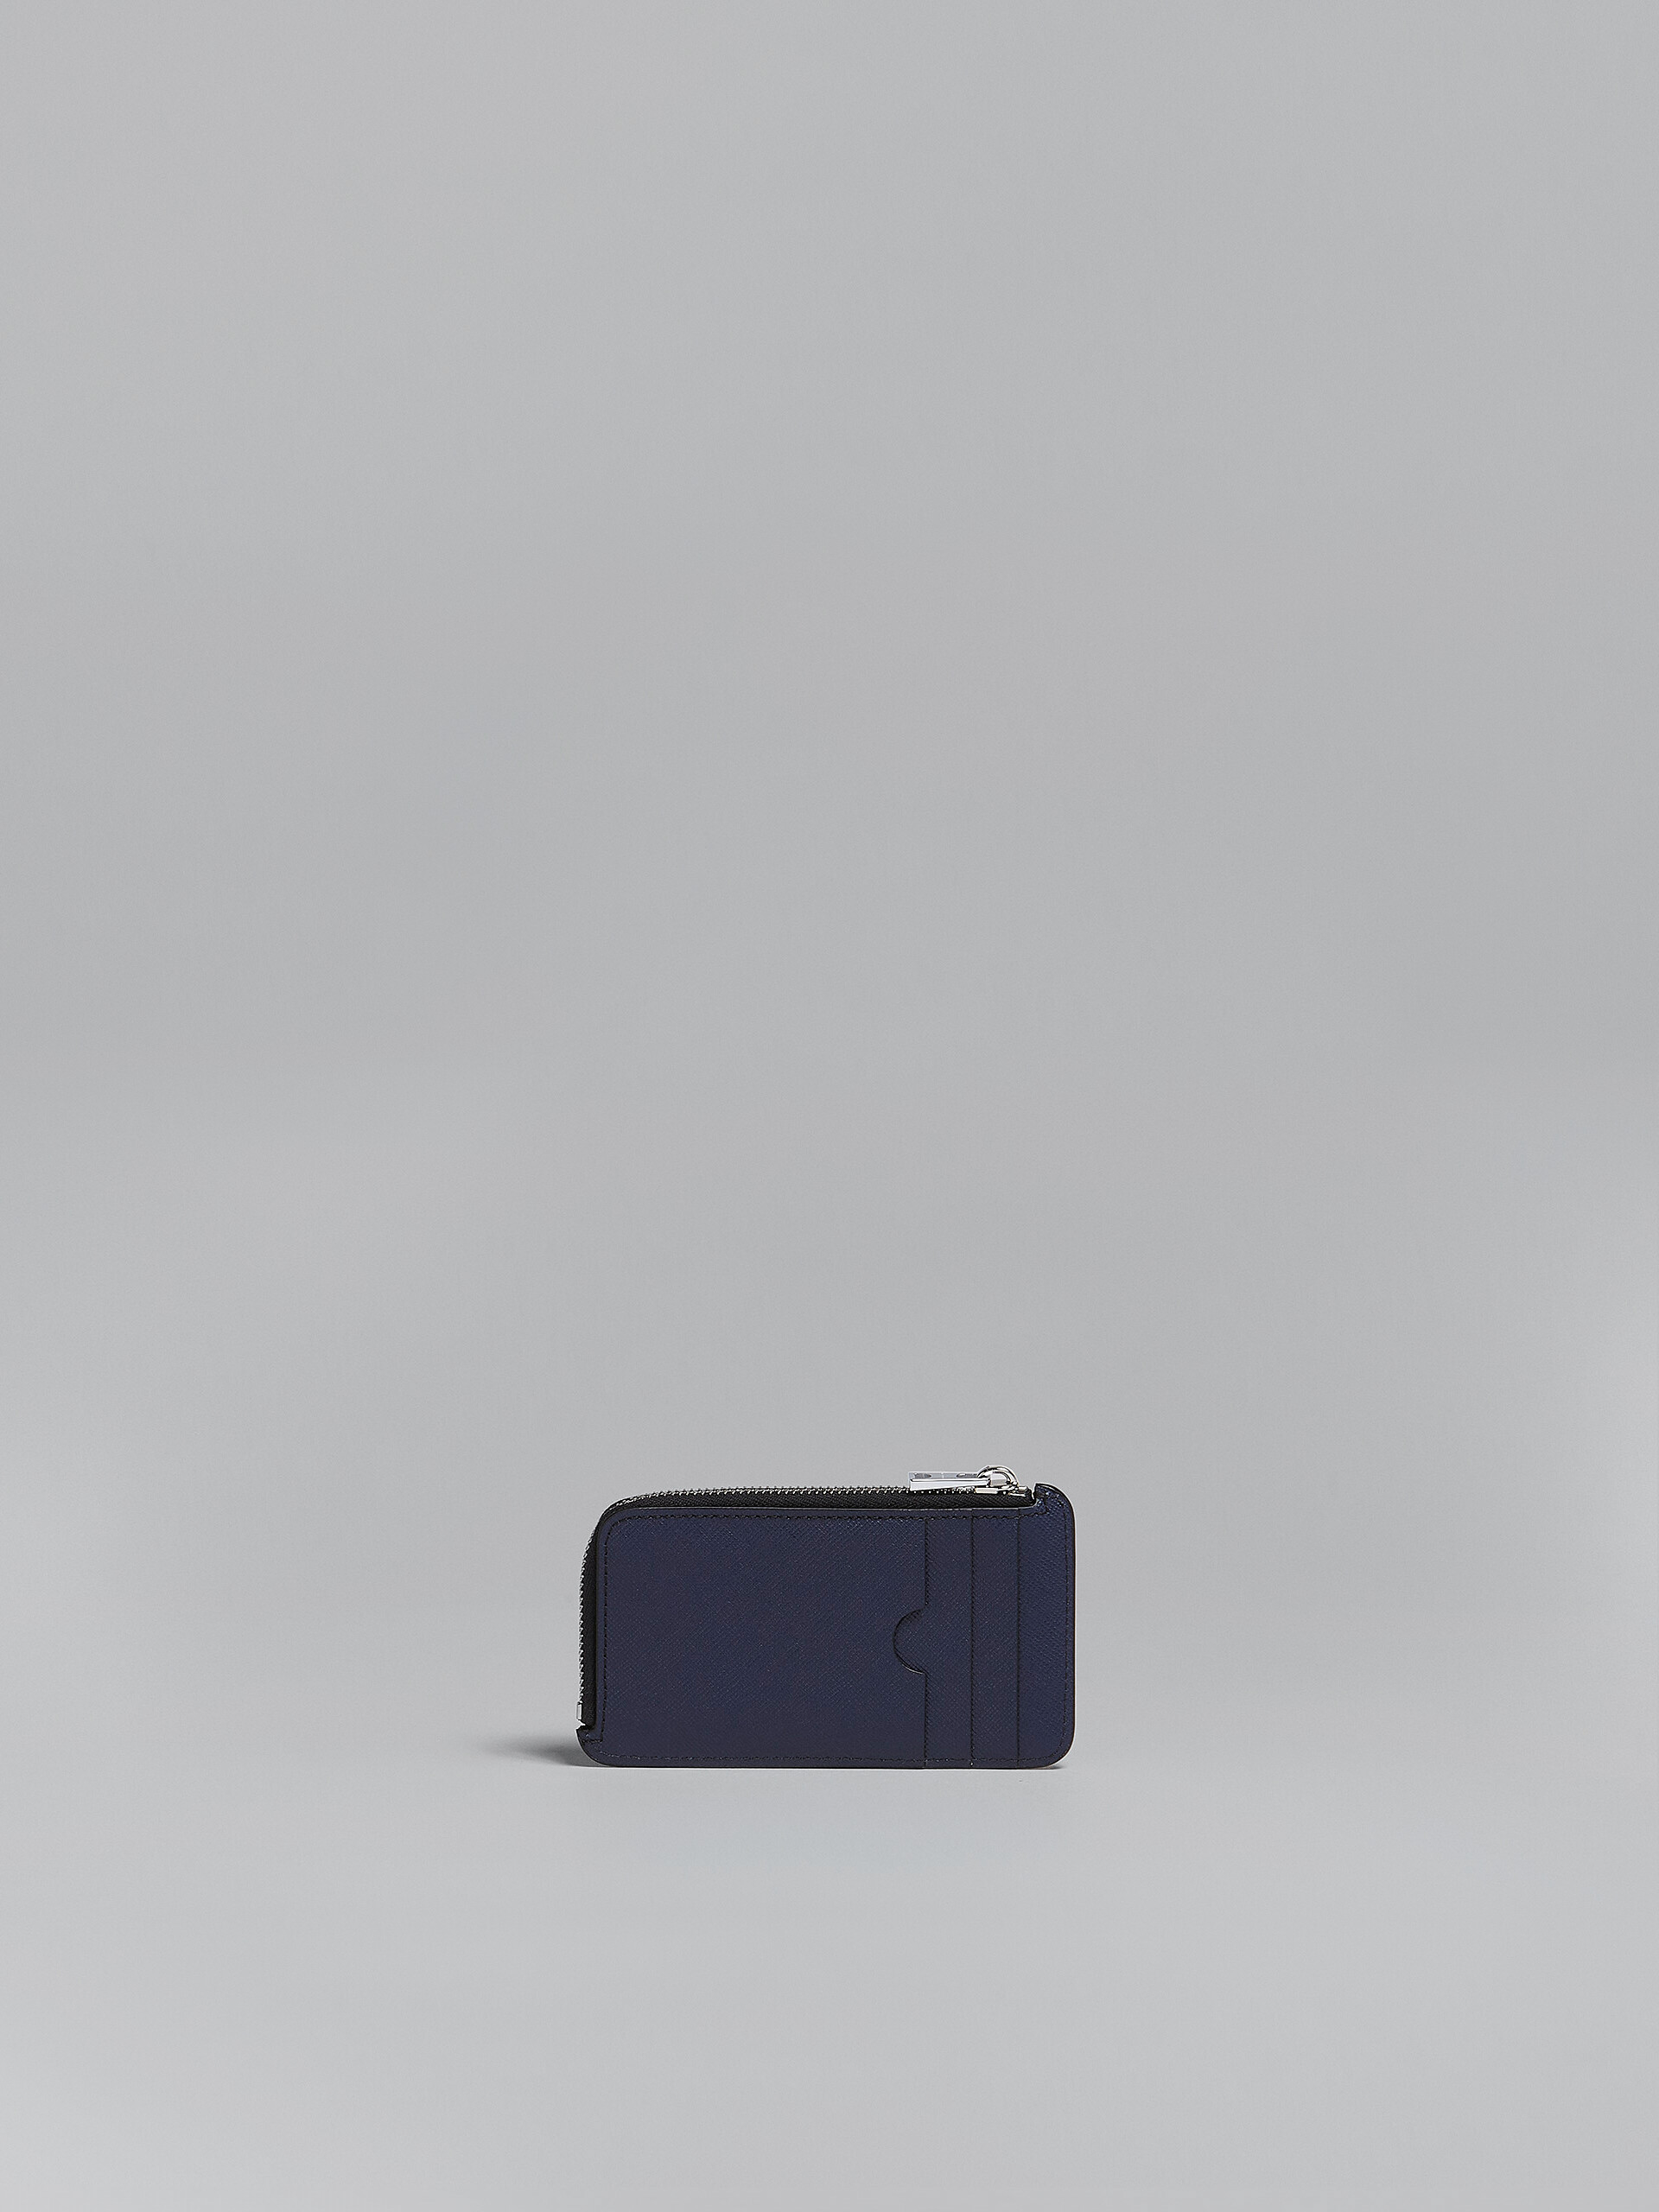 Porte-cartes zippé en cuir saffiano bleu et noir - Portefeuilles - Image 3